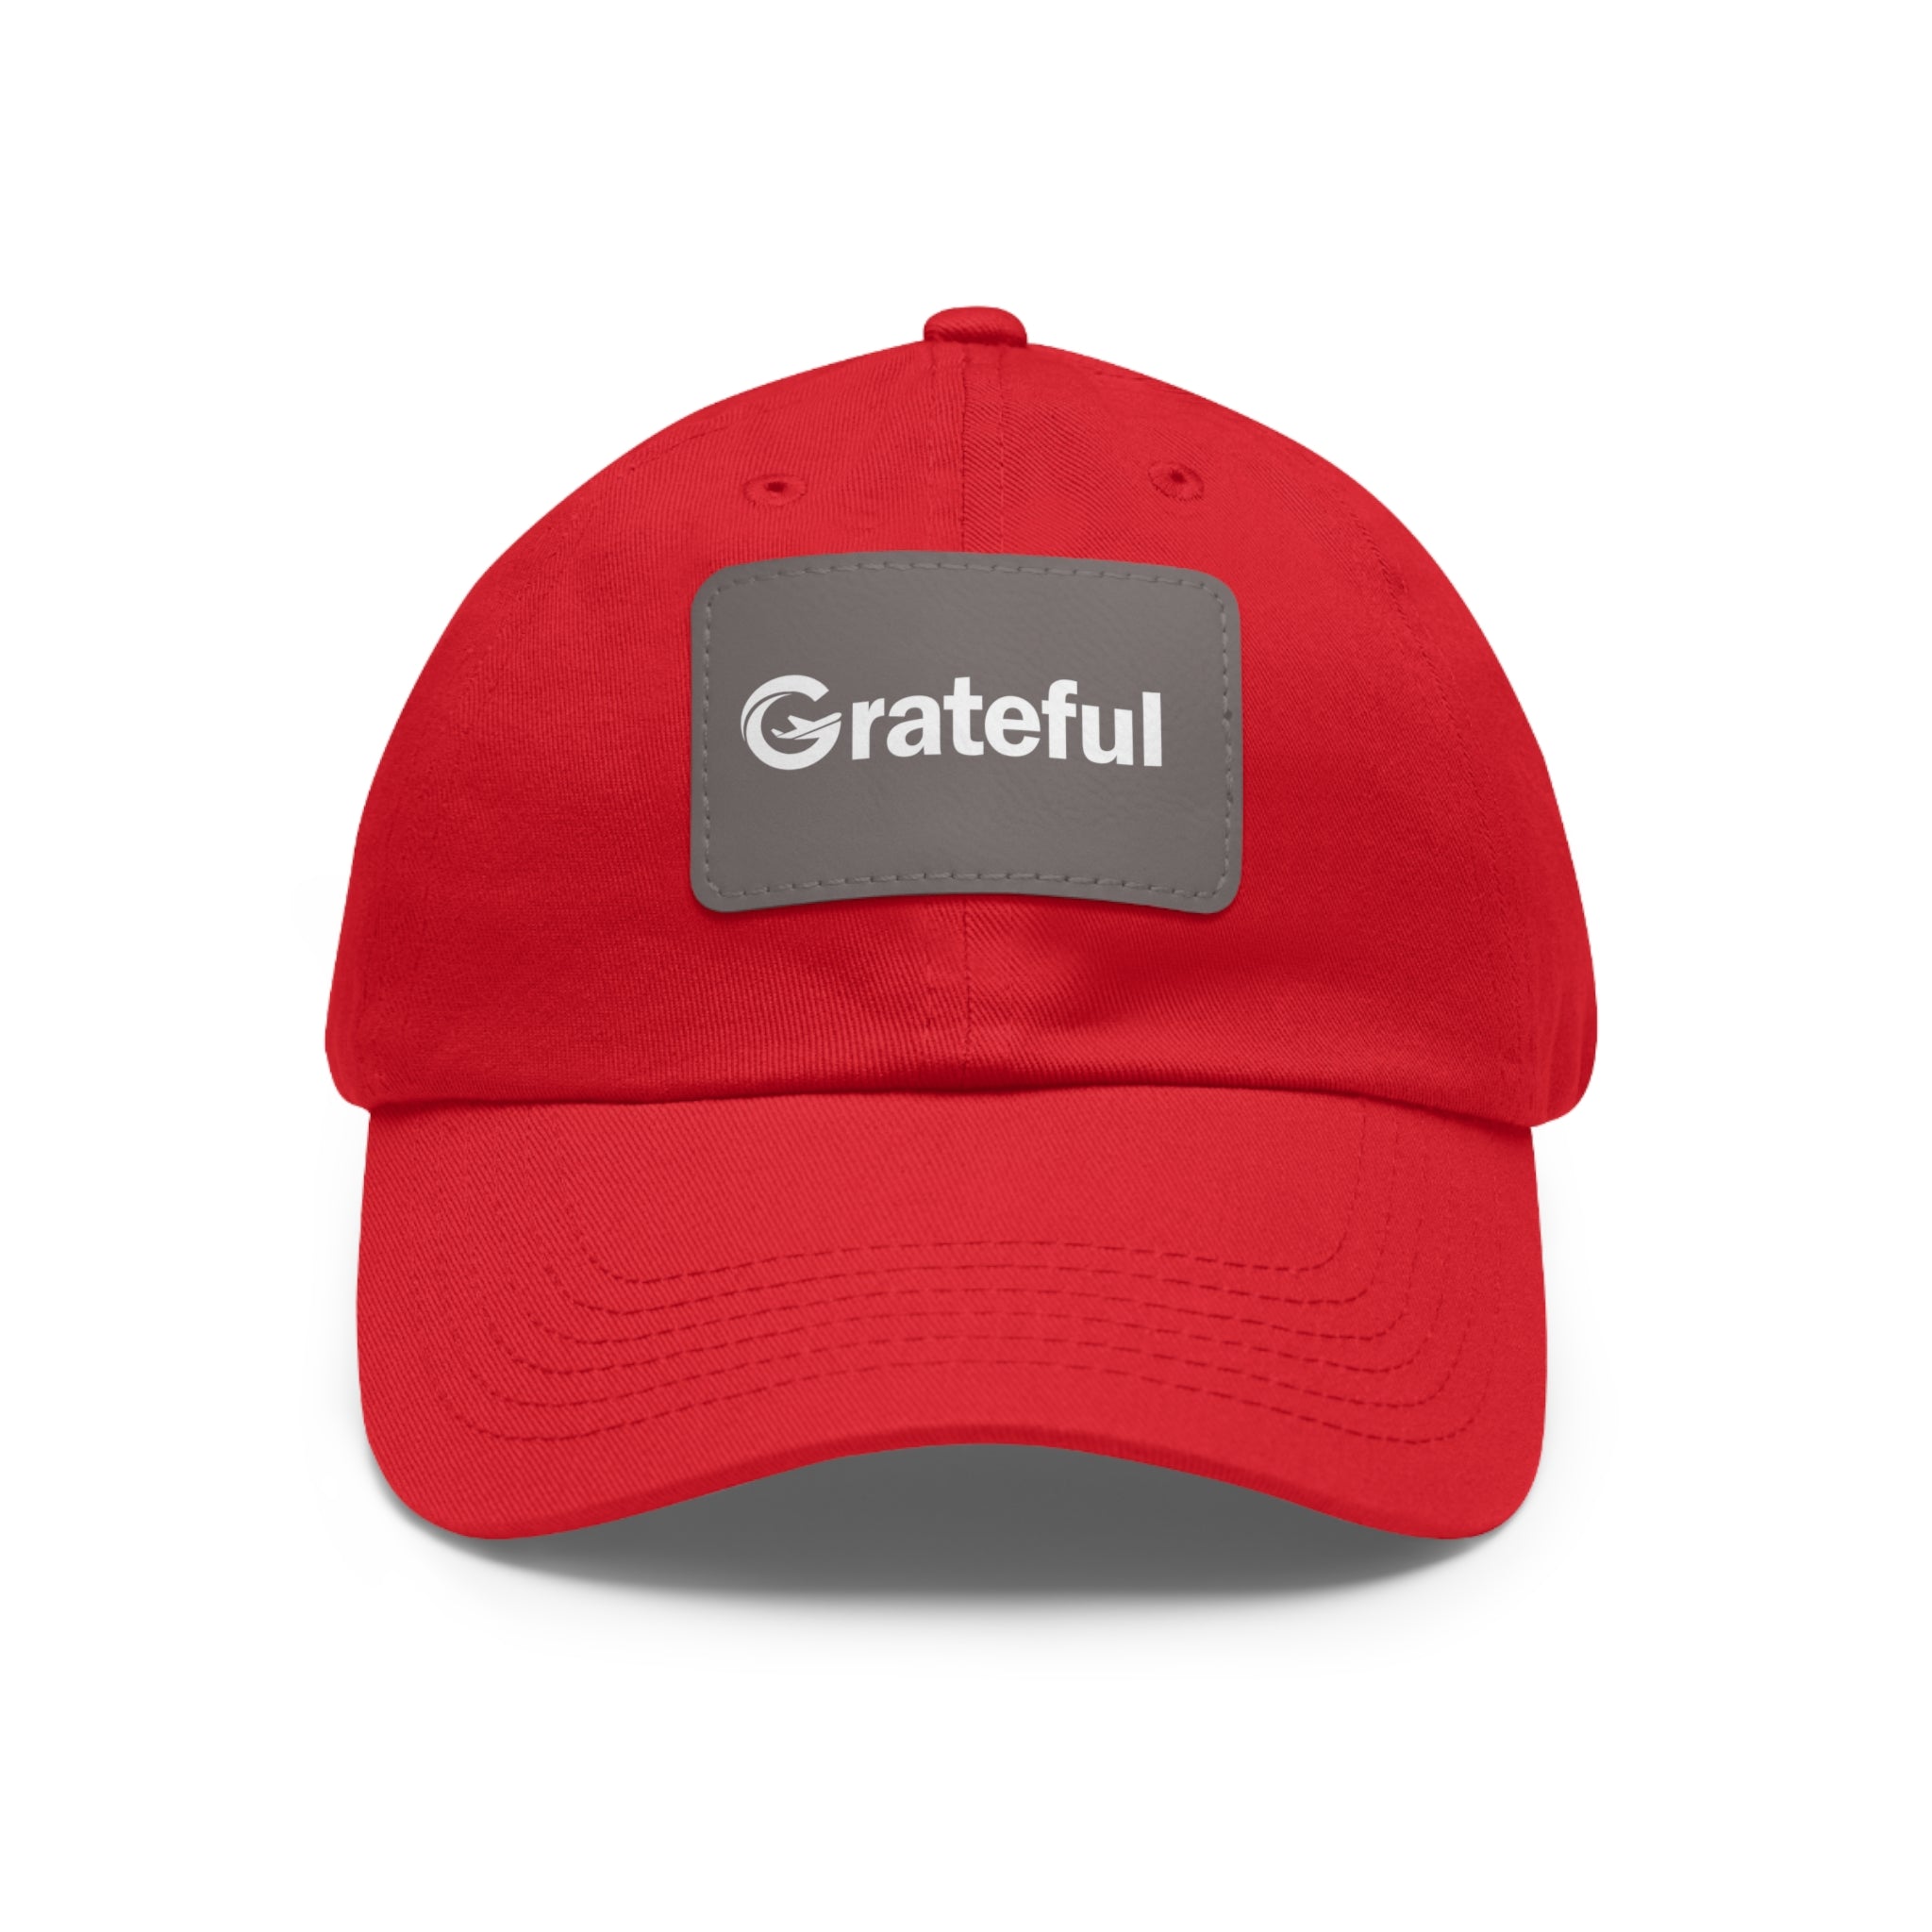 Grateful Cap